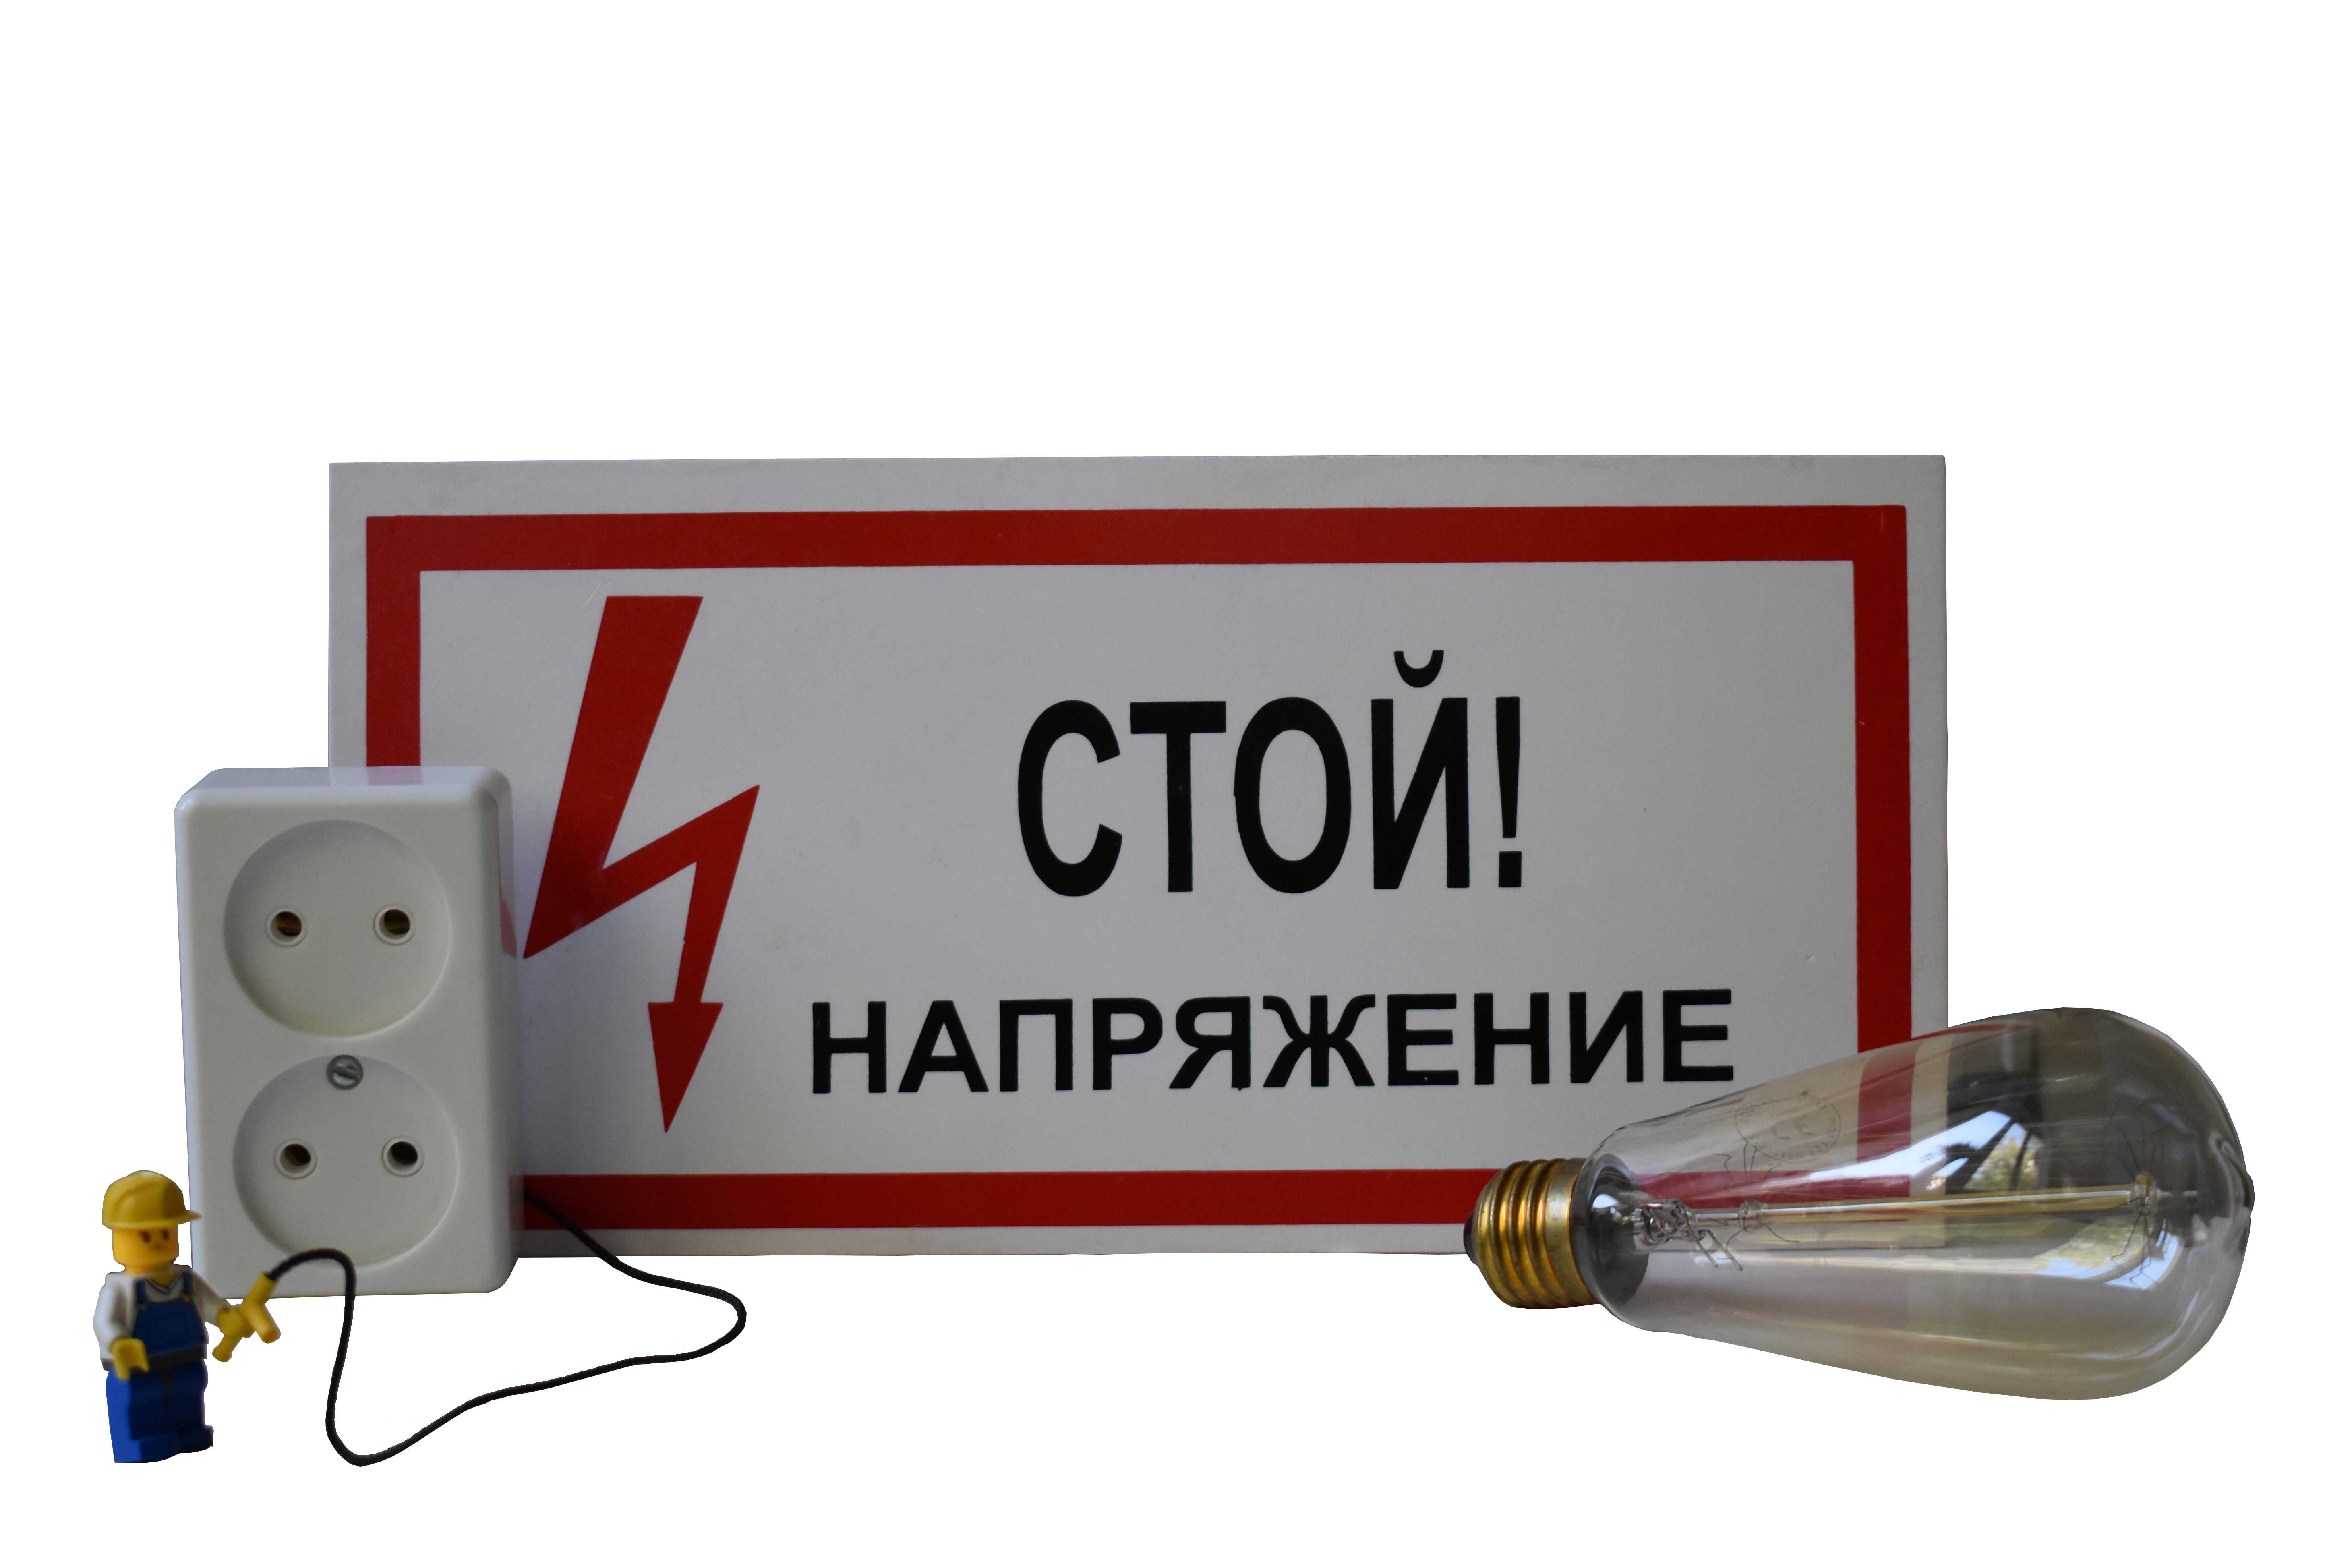 Электробезопасность: мероприятия, нормы, правила, требования